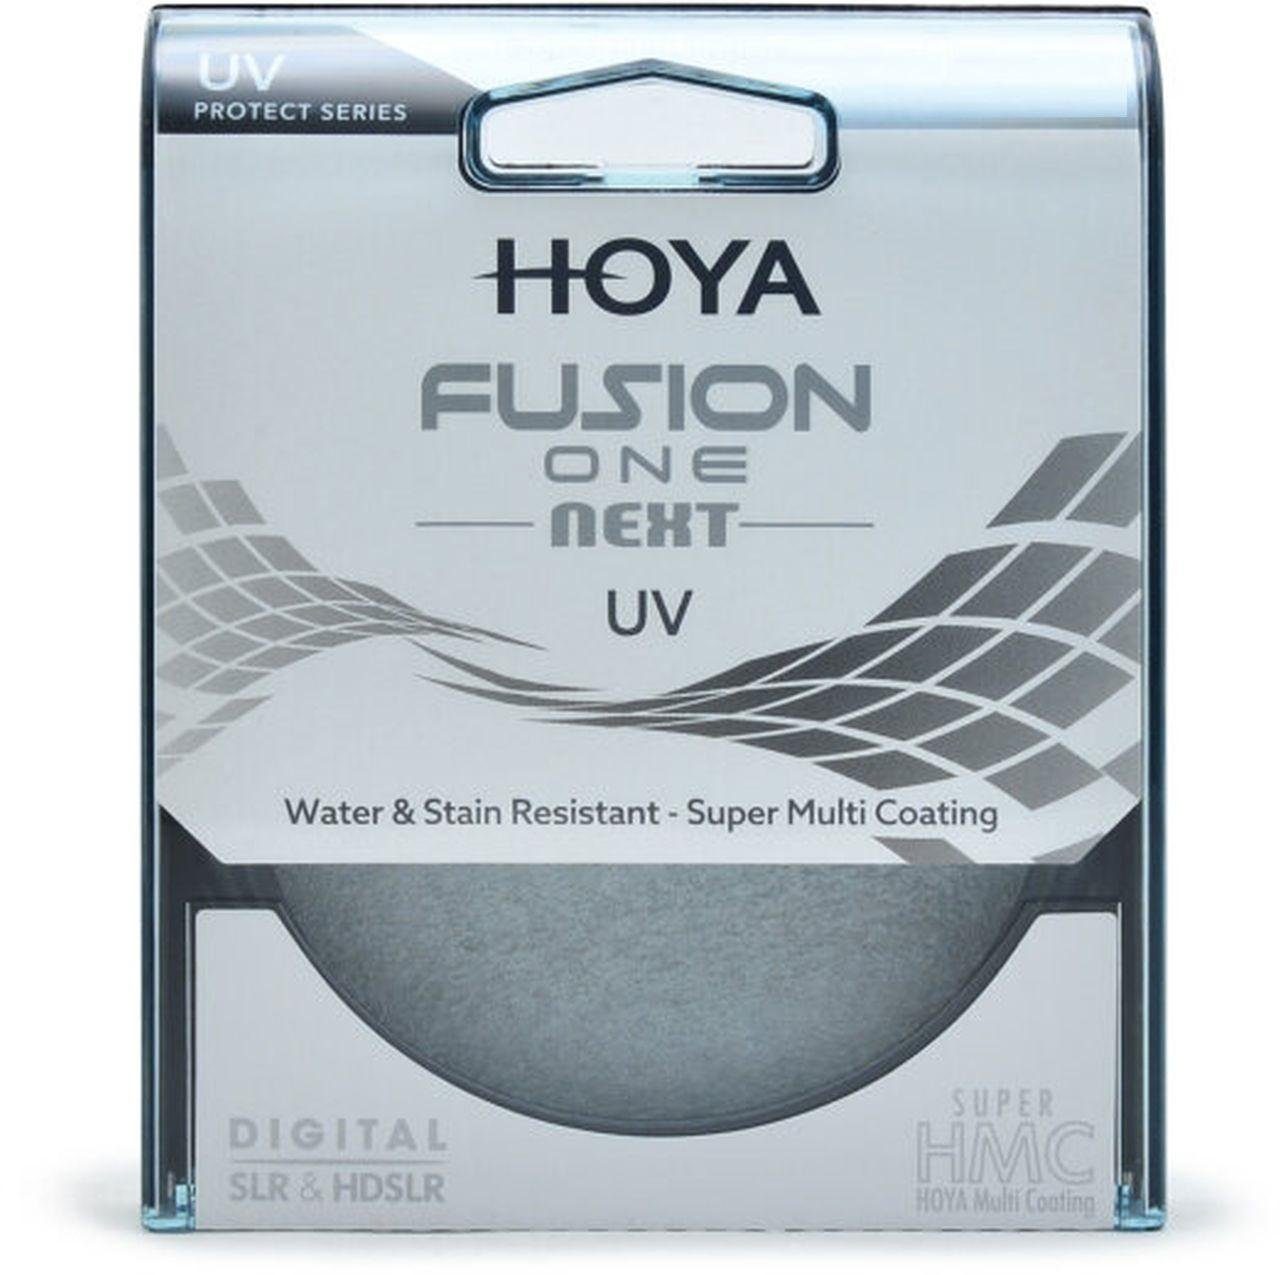 Hoya Fusion ONE Next UV-Filter 67mm Objektivzubehör